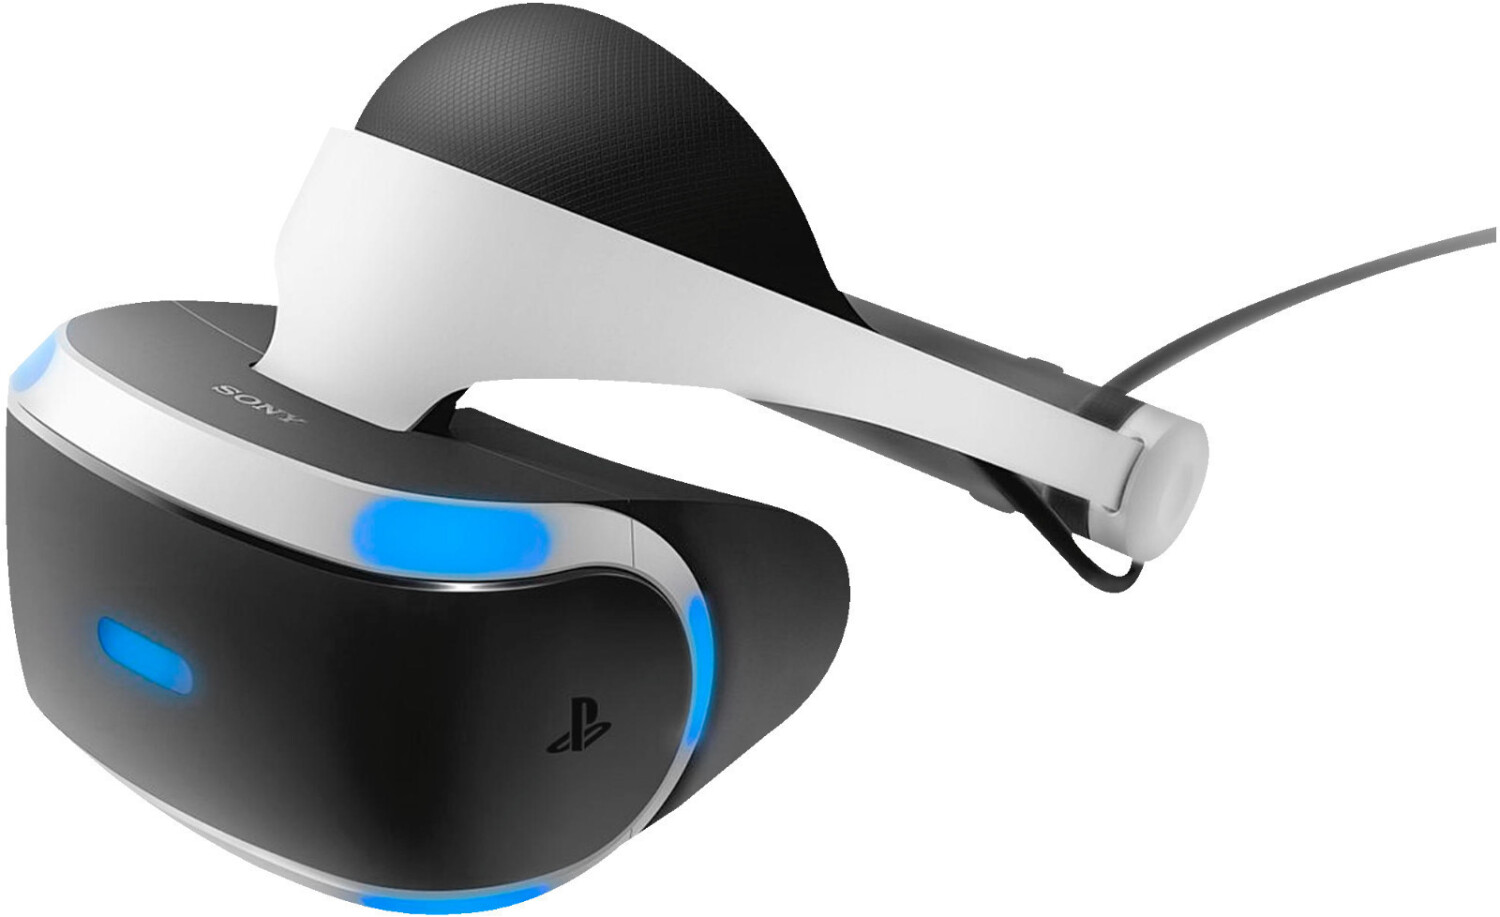 PlayStation VR : le casque de Sony est le moins cher du marché !